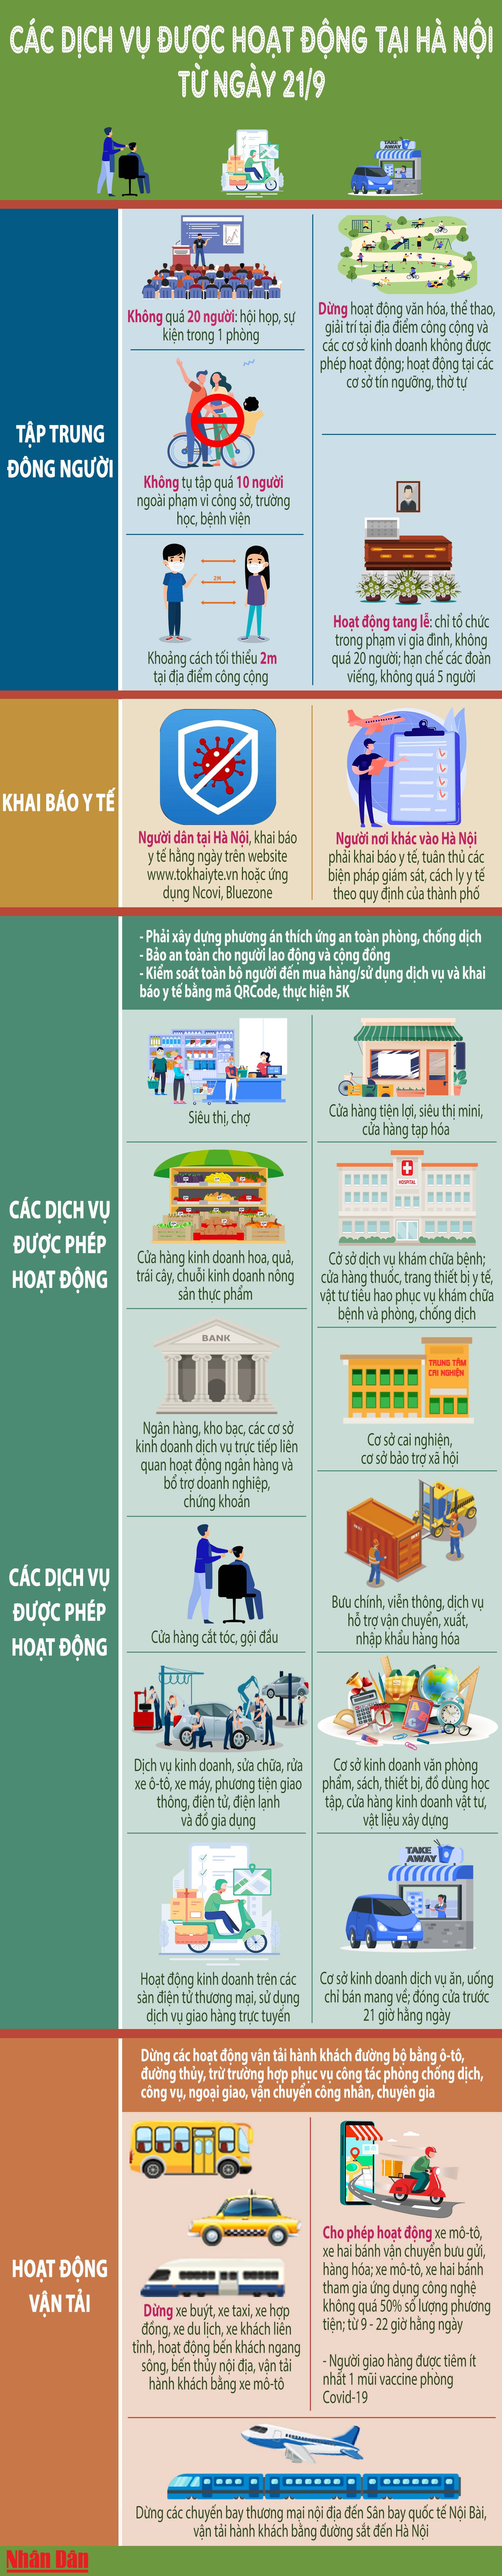 [Infographics] Các dịch vụ được phép hoạt động tại Hà Nội từ ngày 21/9 - Ảnh 1